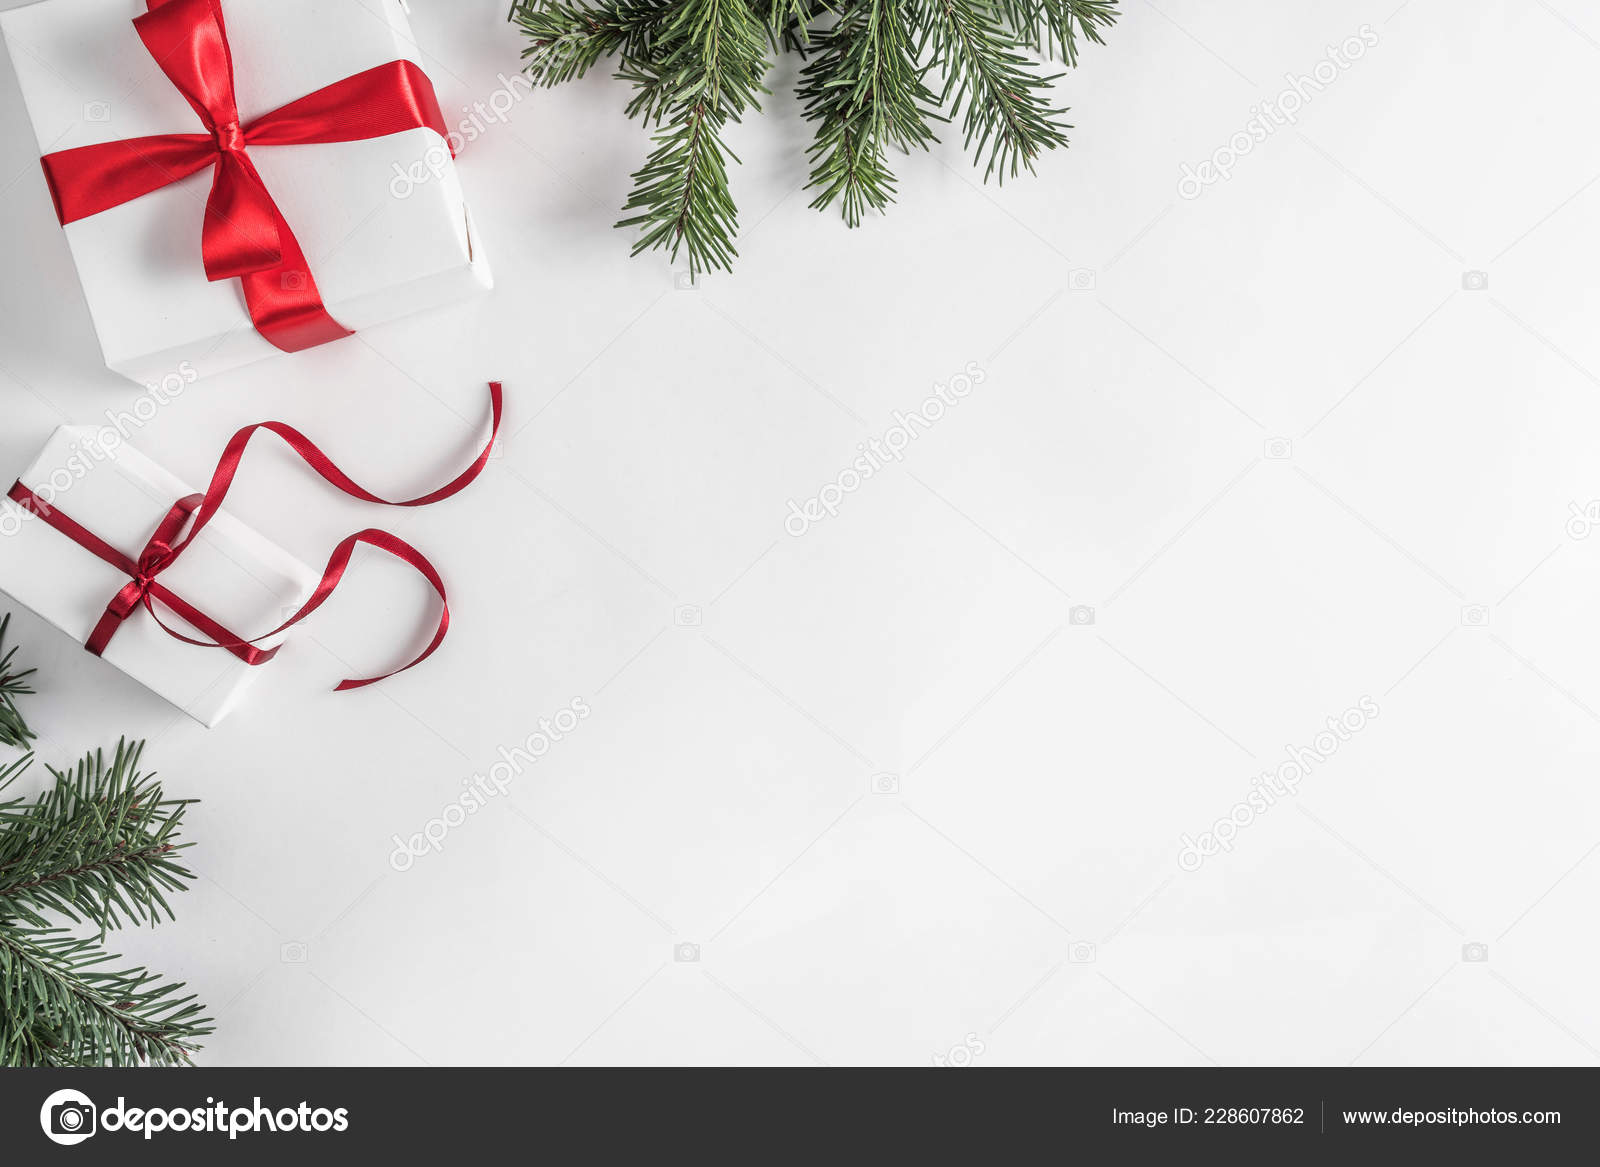 Nếu bạn đang tìm kiếm món quà Giáng Sinh độc đáo, hãy xem ngay hình ảnh trên nền trắng Giáng Sinh này. Những cây thông, trái thơm và quả hộp tuyệt đẹp sẽ khiến bạn lựa chọn một món quà độc đáo và đặc biệt để tặng cho người thân yêu của mình. Hãy truy cập ngay để xem!